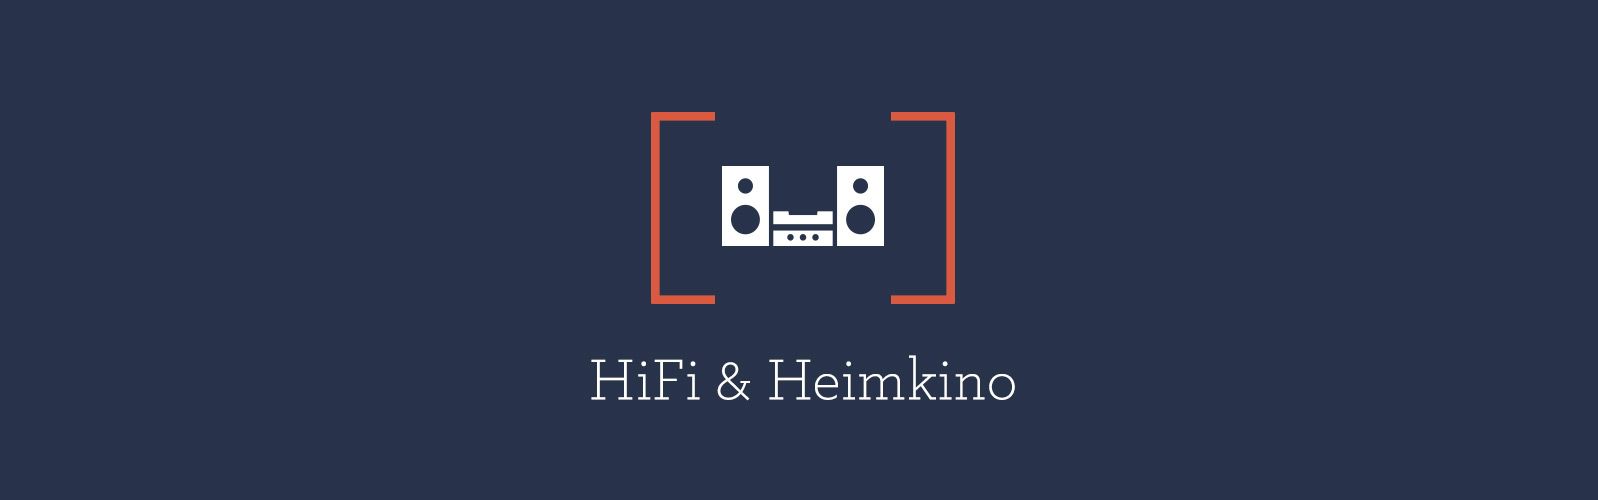 HiFi & Heimkino